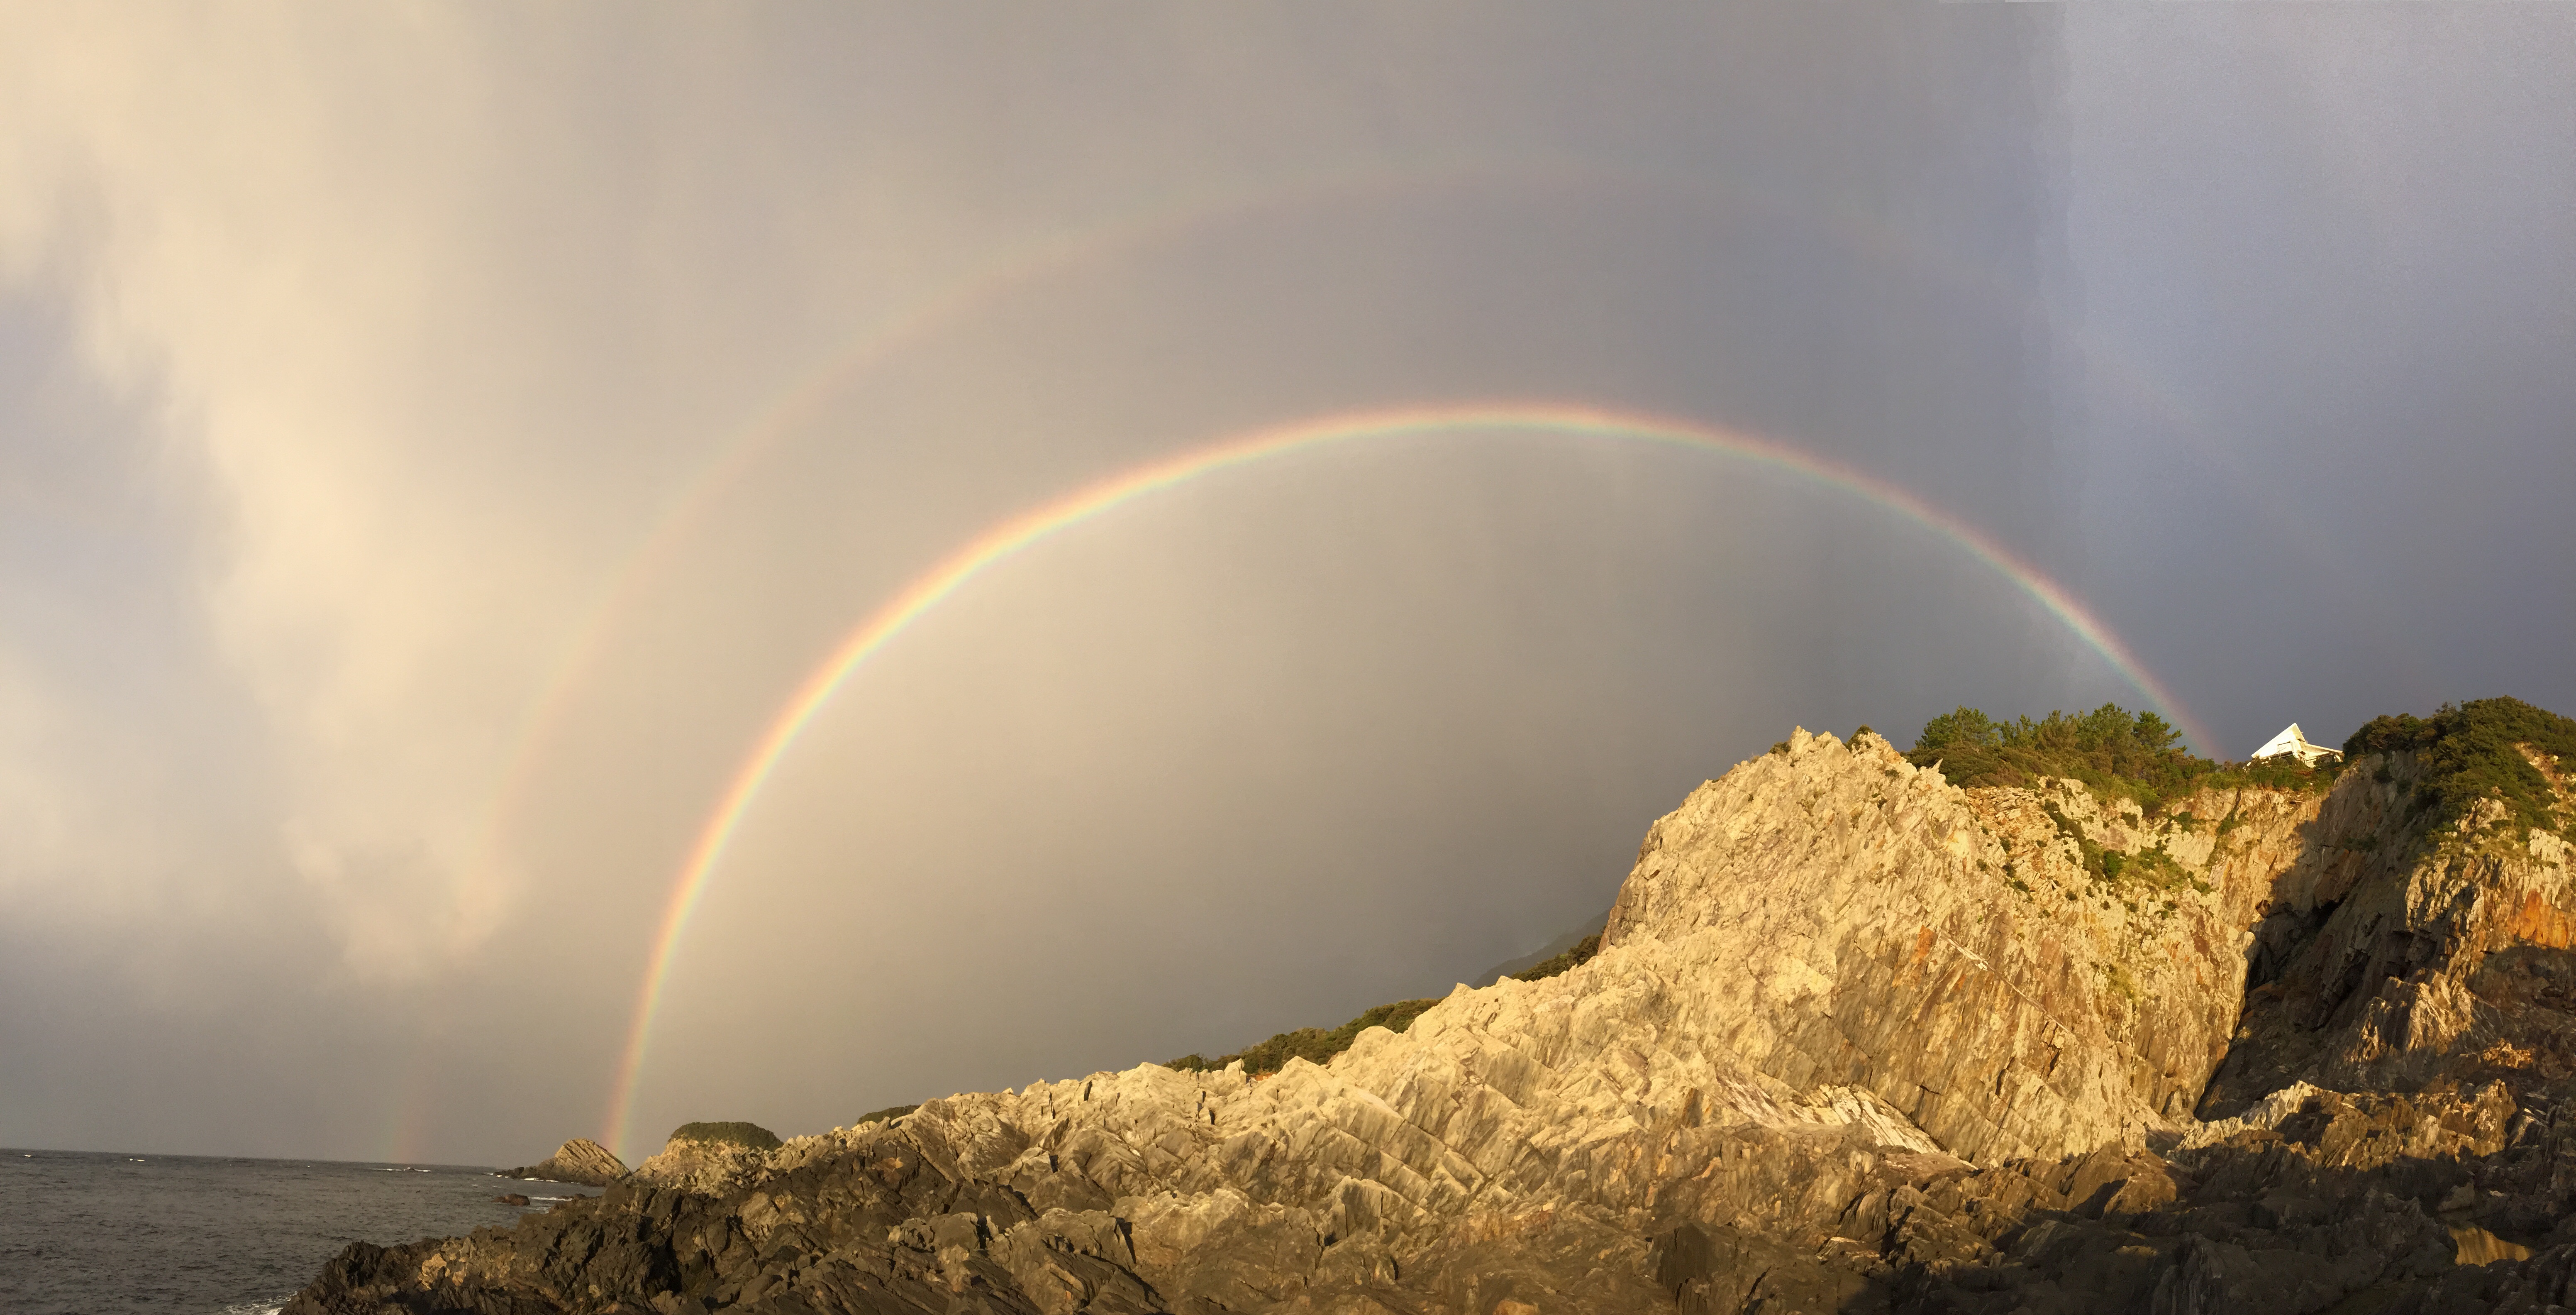 海から岩山に掛かる二重虹です。当館近くでは冬場に虹を見る機会が多いです。